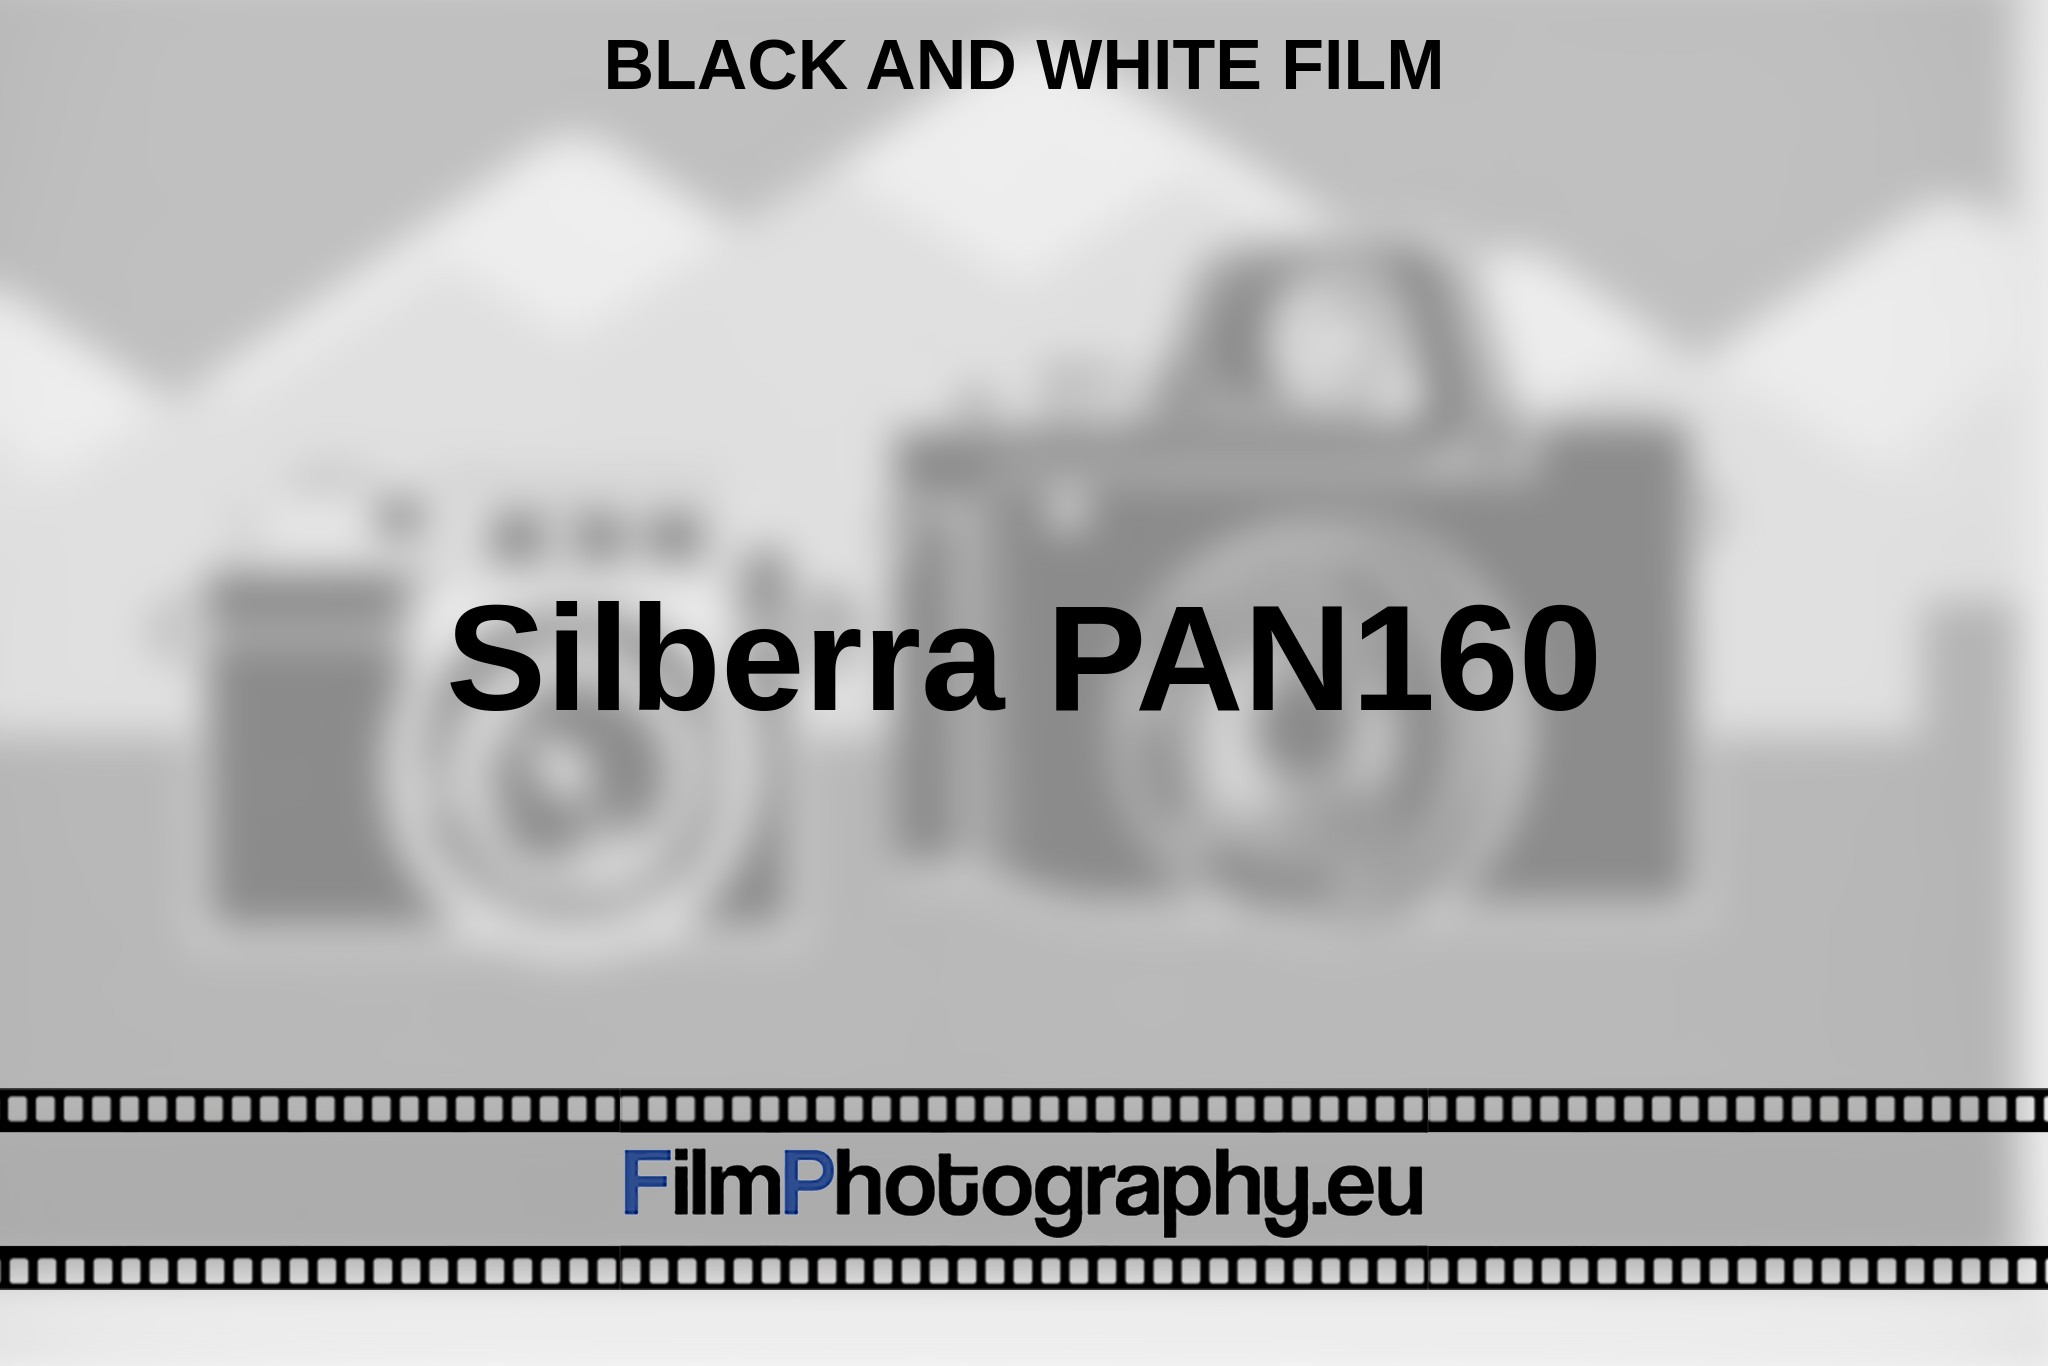 silberra-pan160-black-and-white-film-en-bnv.jpg